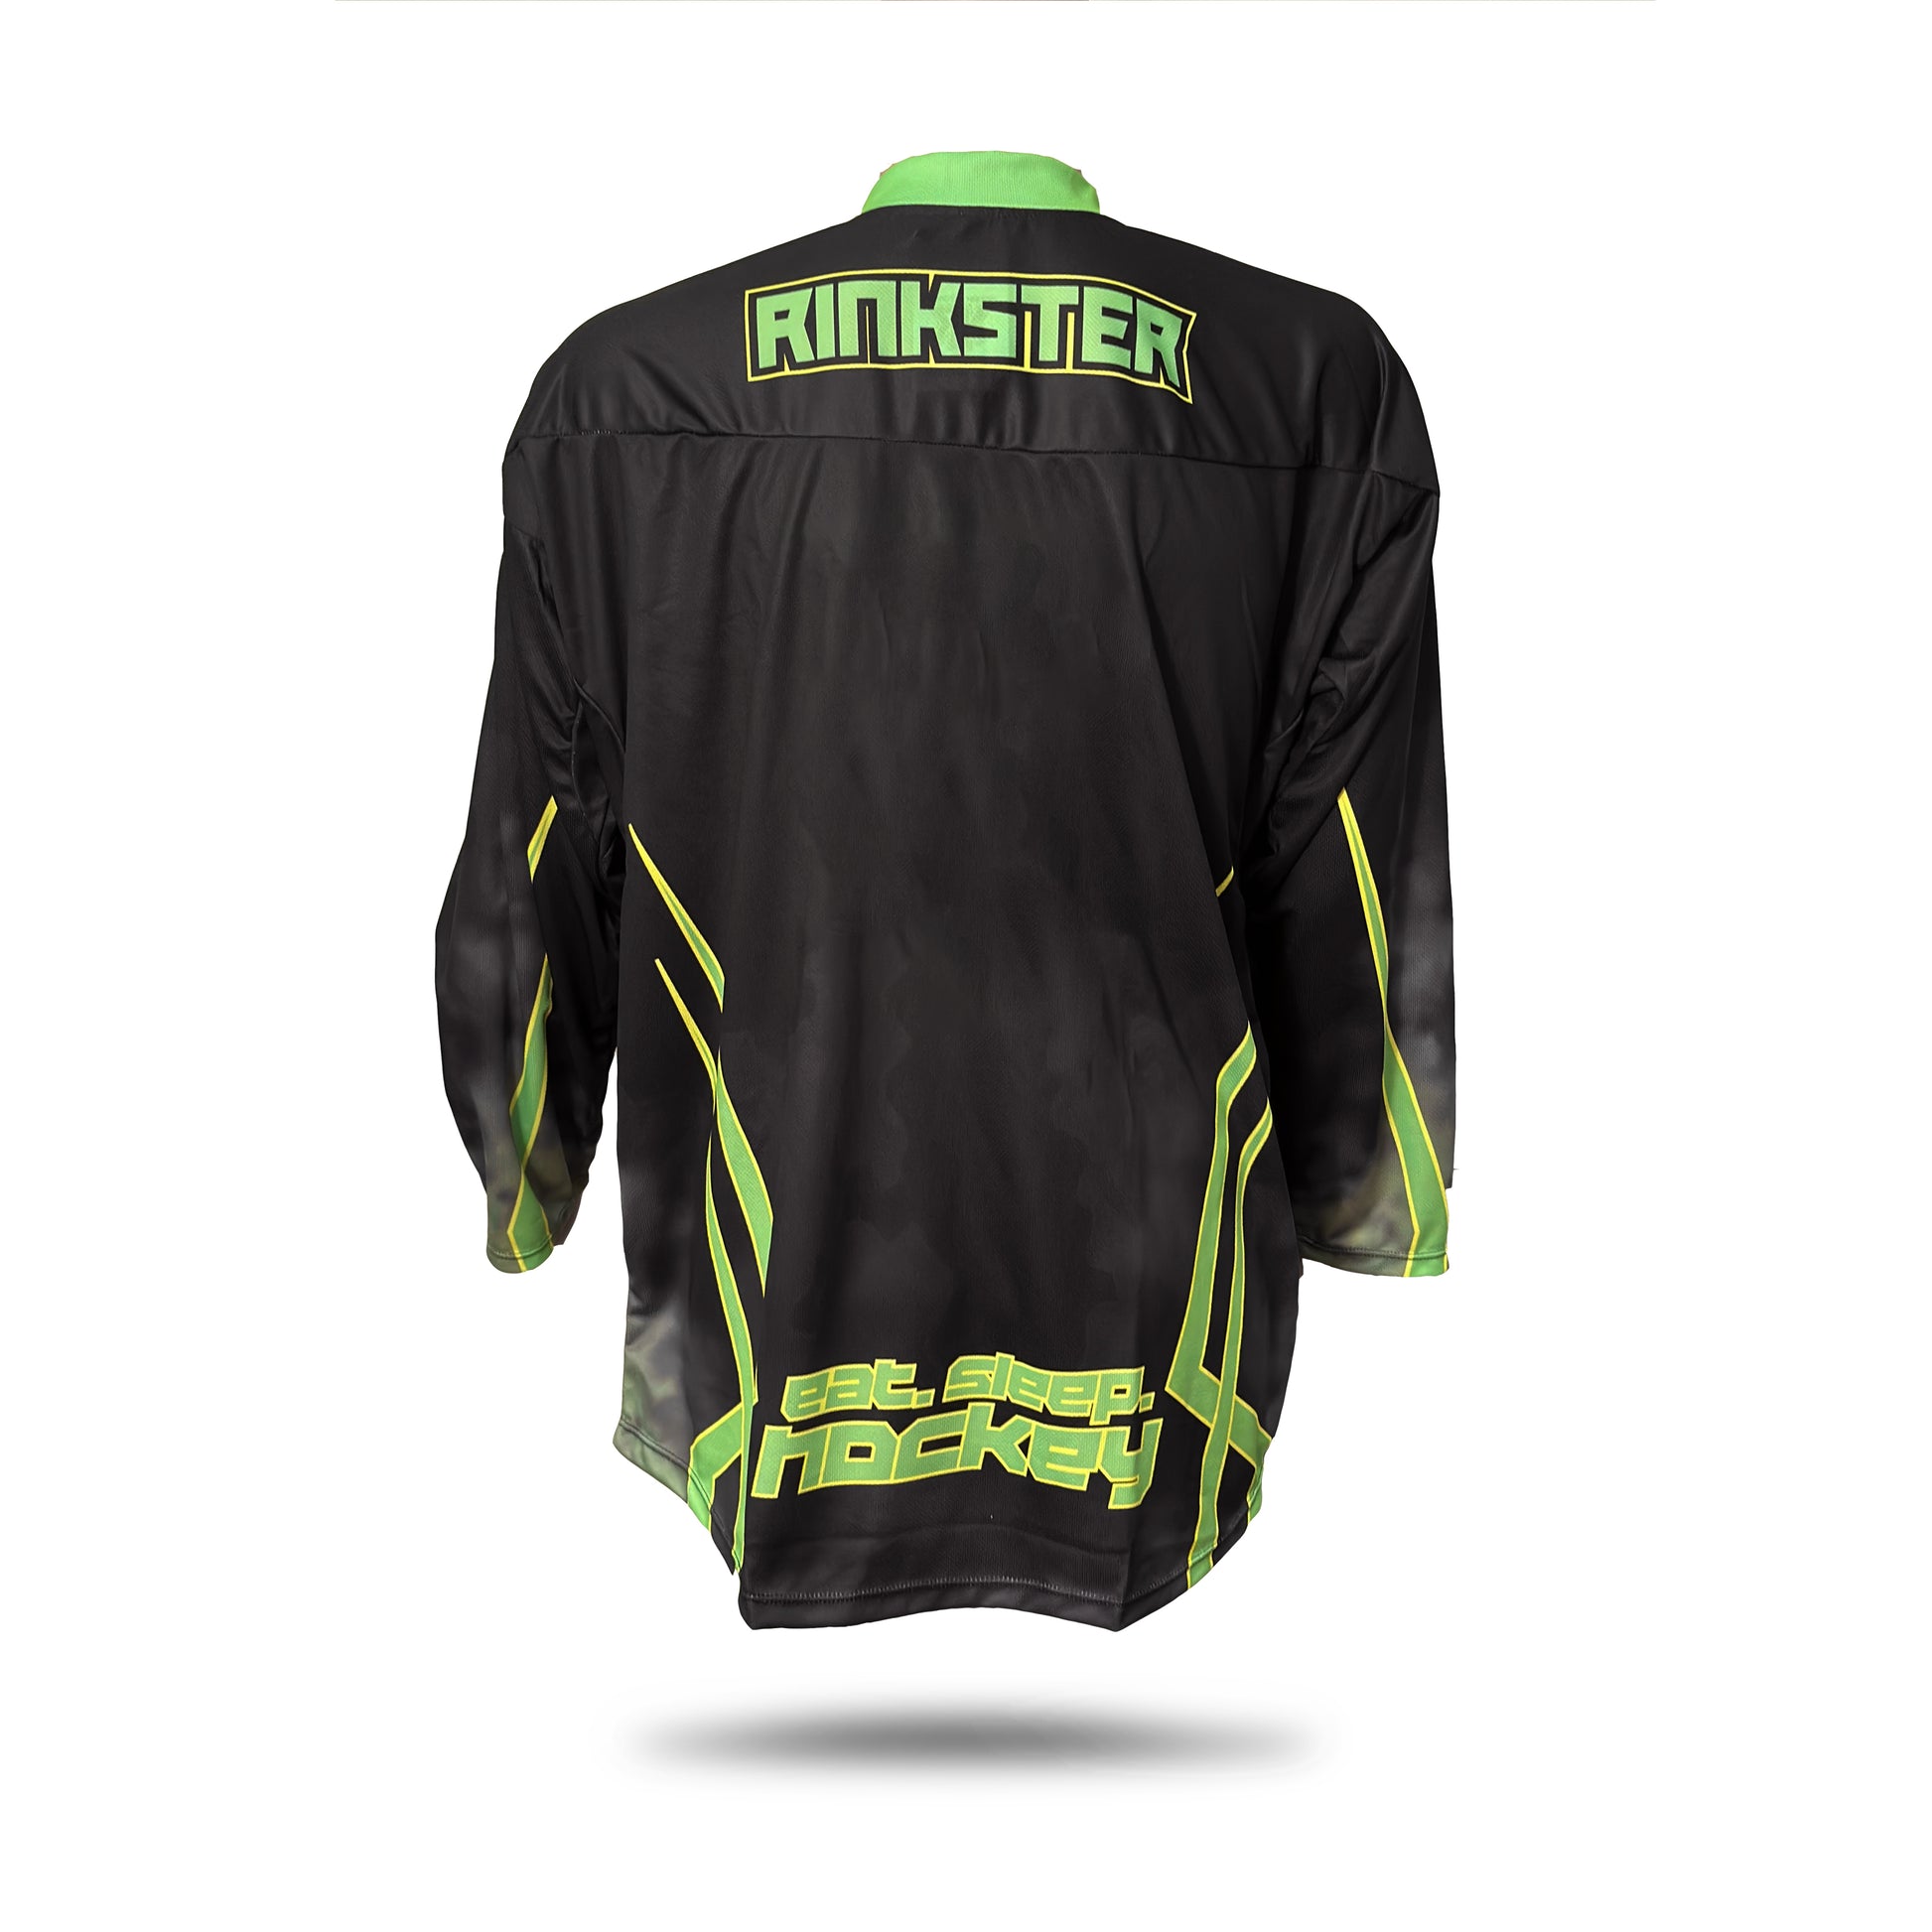 Rinkster Pro Team Roller Hockey Jersey | Roller Hockey Jerseys | Rinkster Jr MD